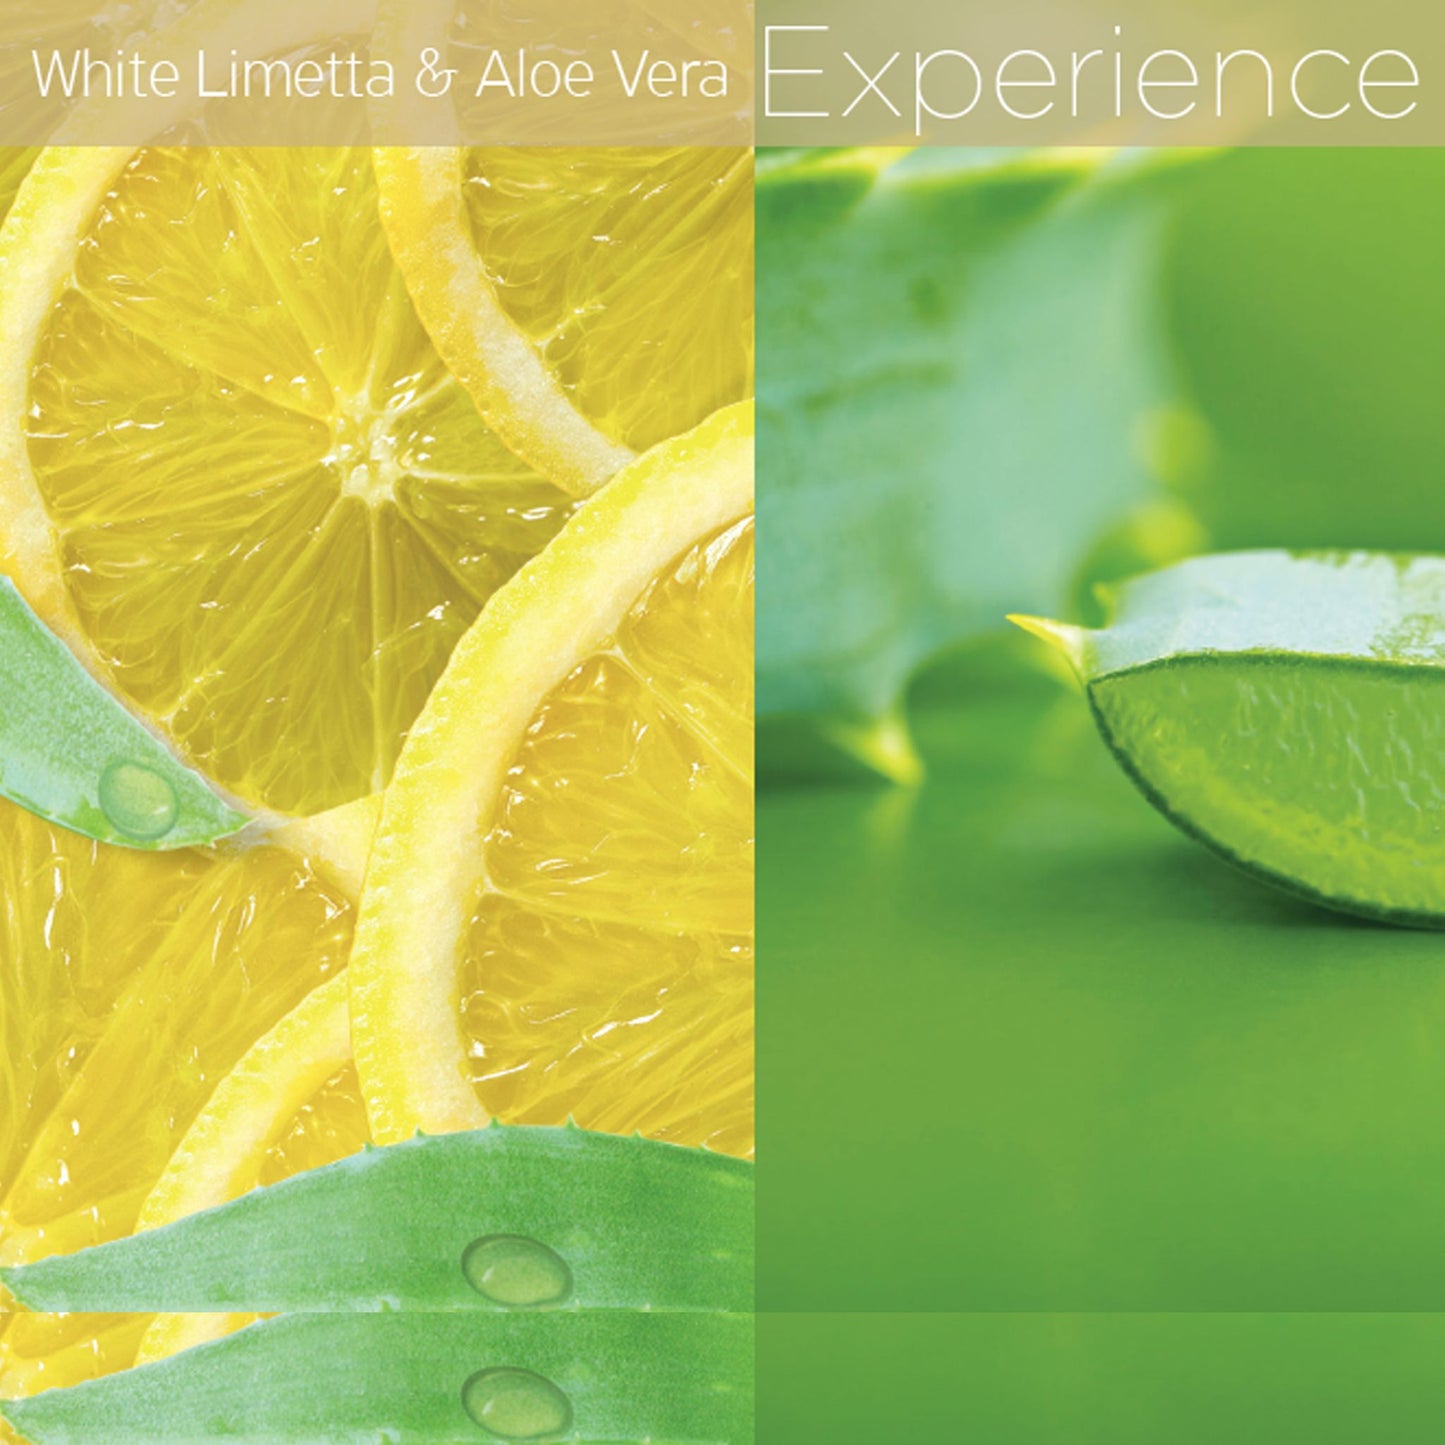 White Limetta & Aloe Vera Cuticle Oil 2.5oz